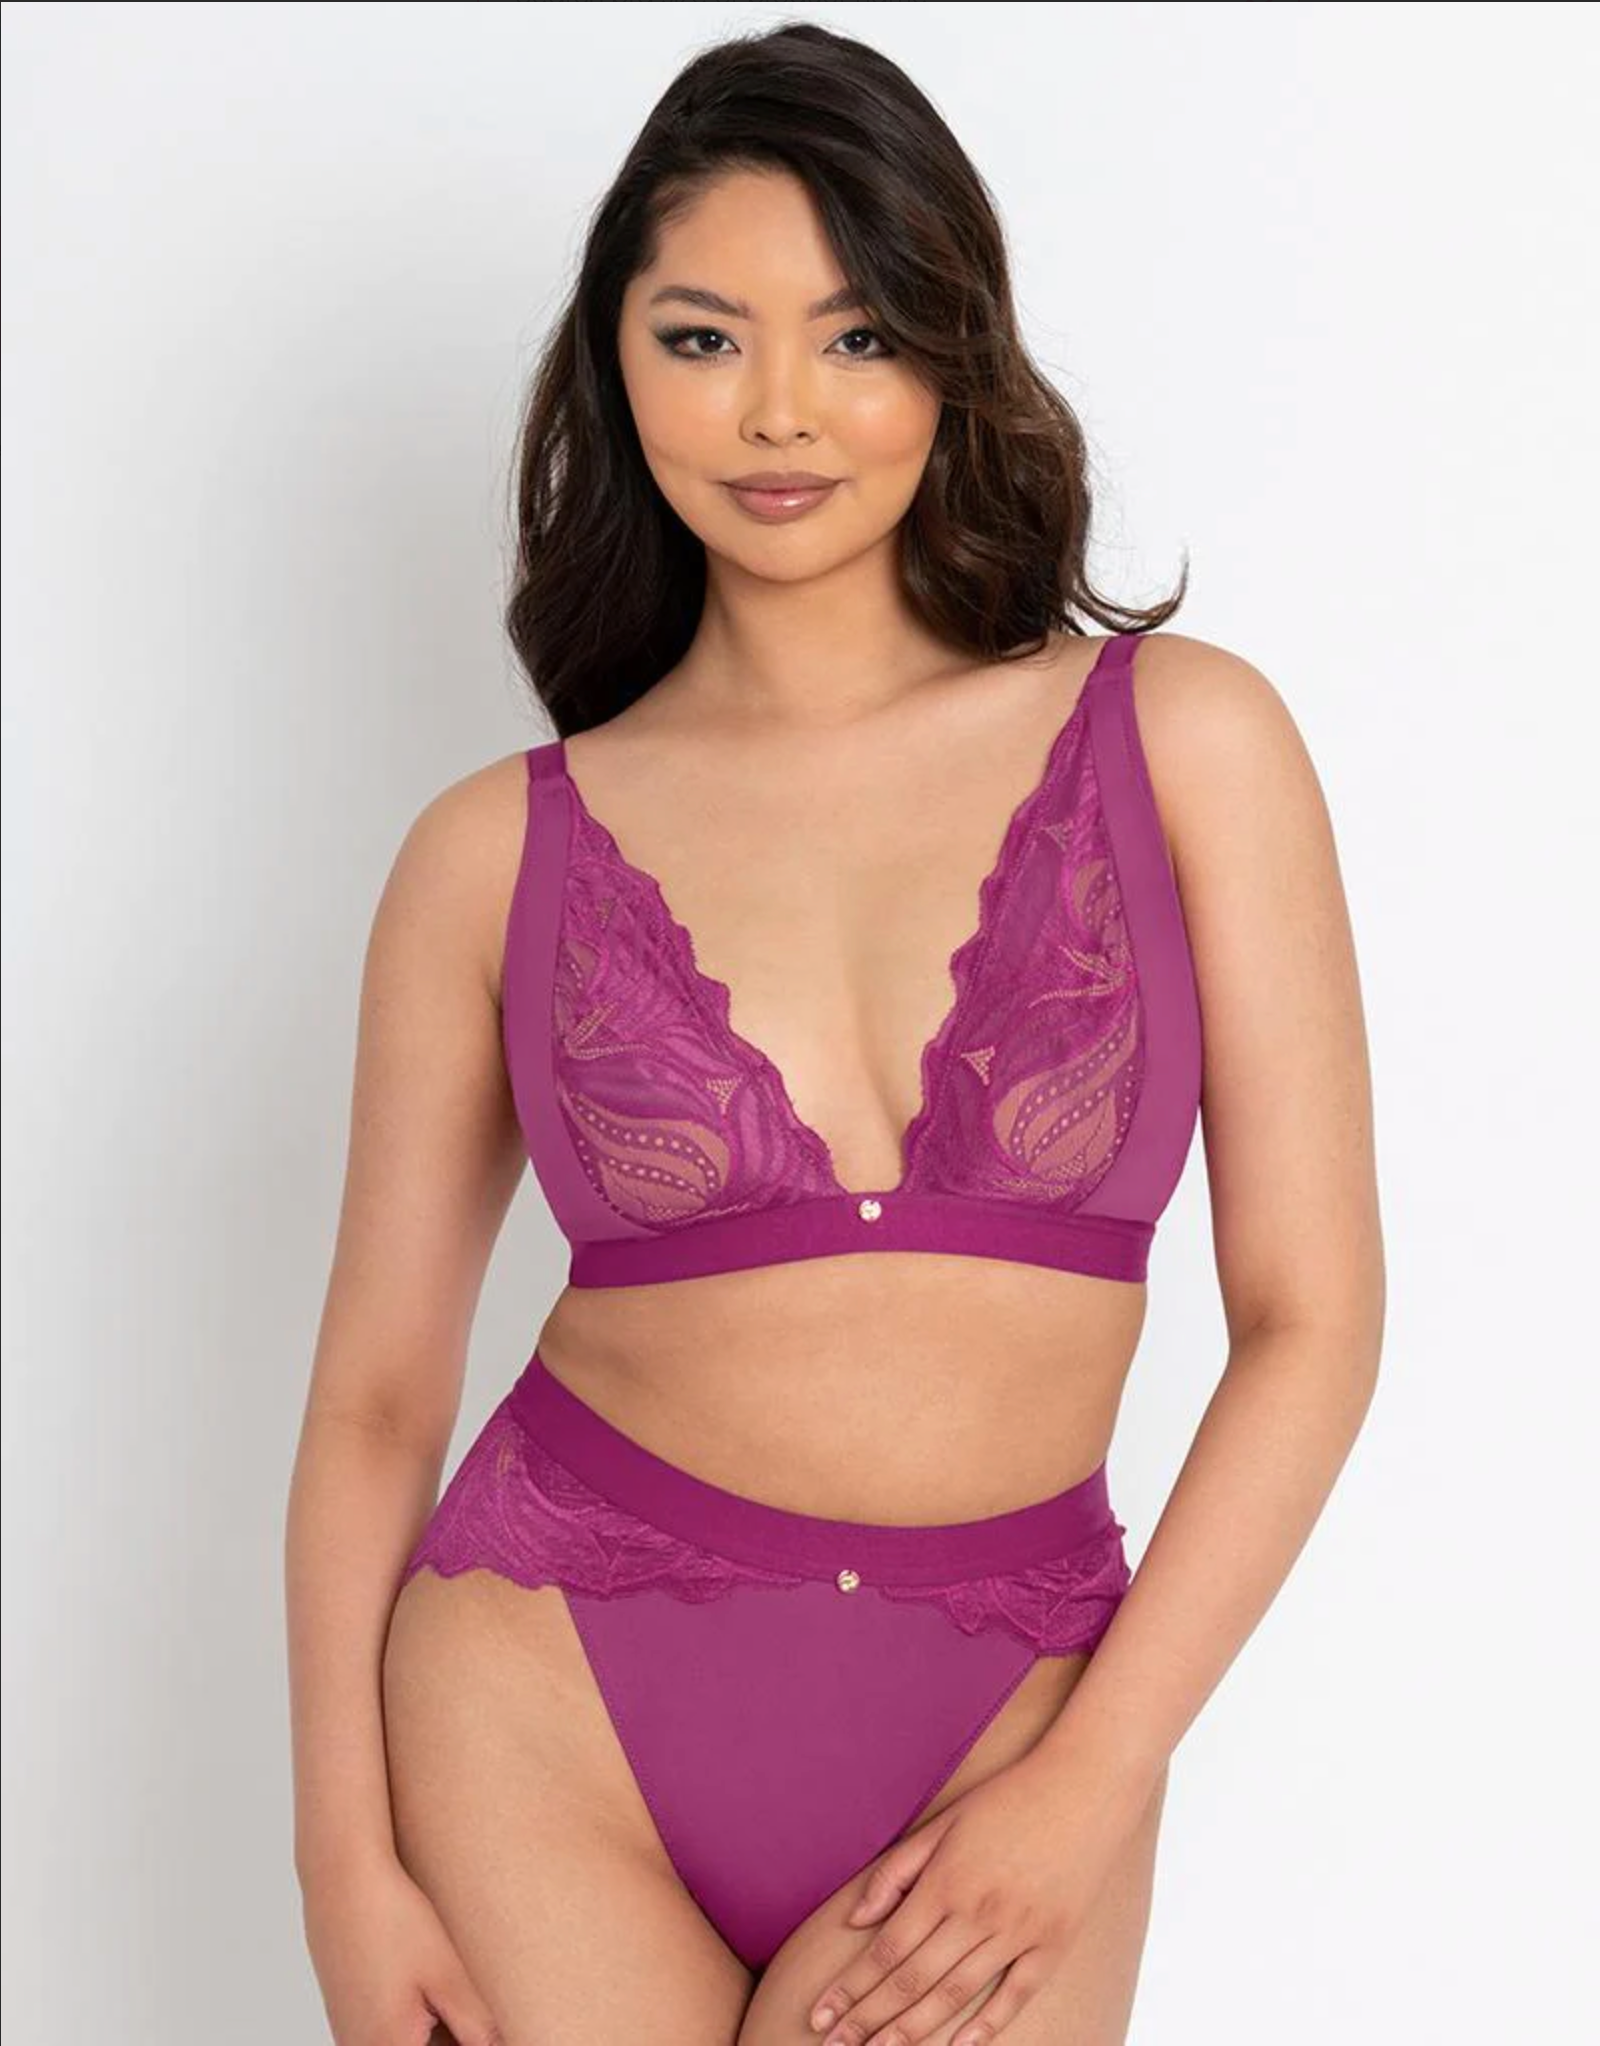 Purple Lace Bra, Shop The Largest Collection